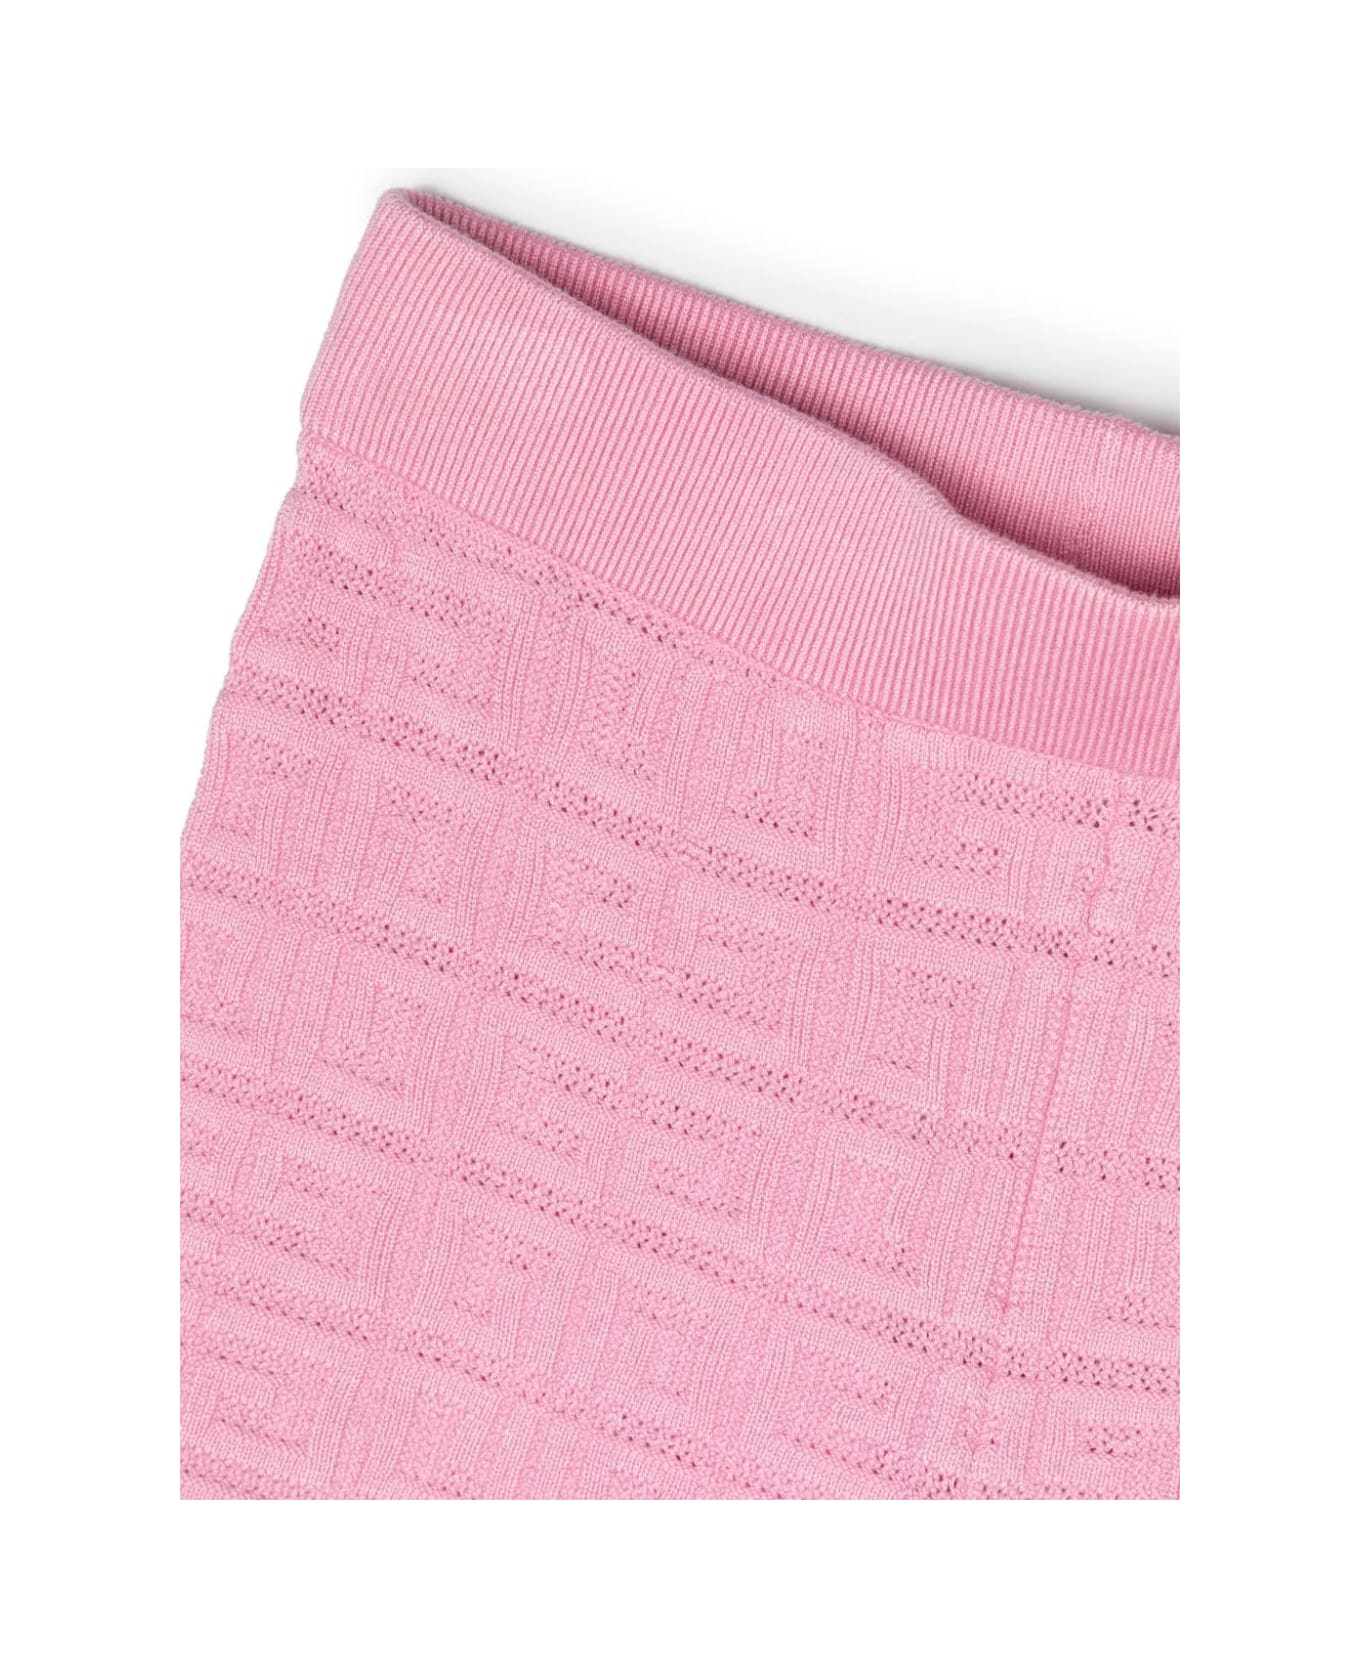 Givenchy Shorts With Jacquard Motif - Pink